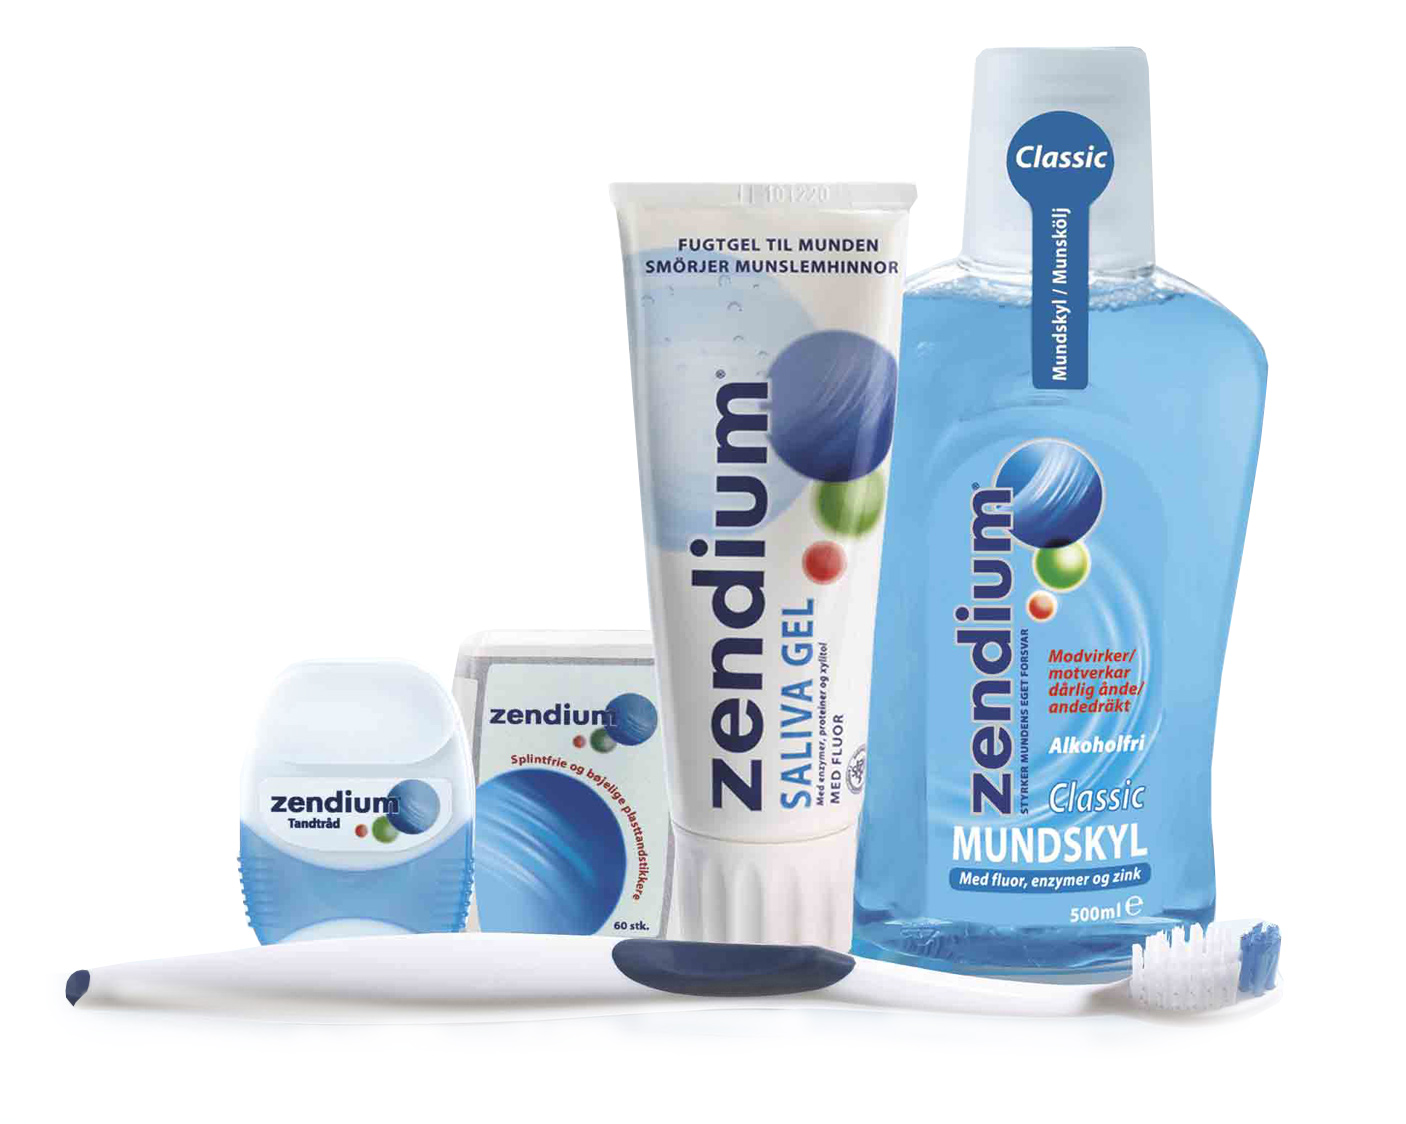 Emballagedesign-Zendium